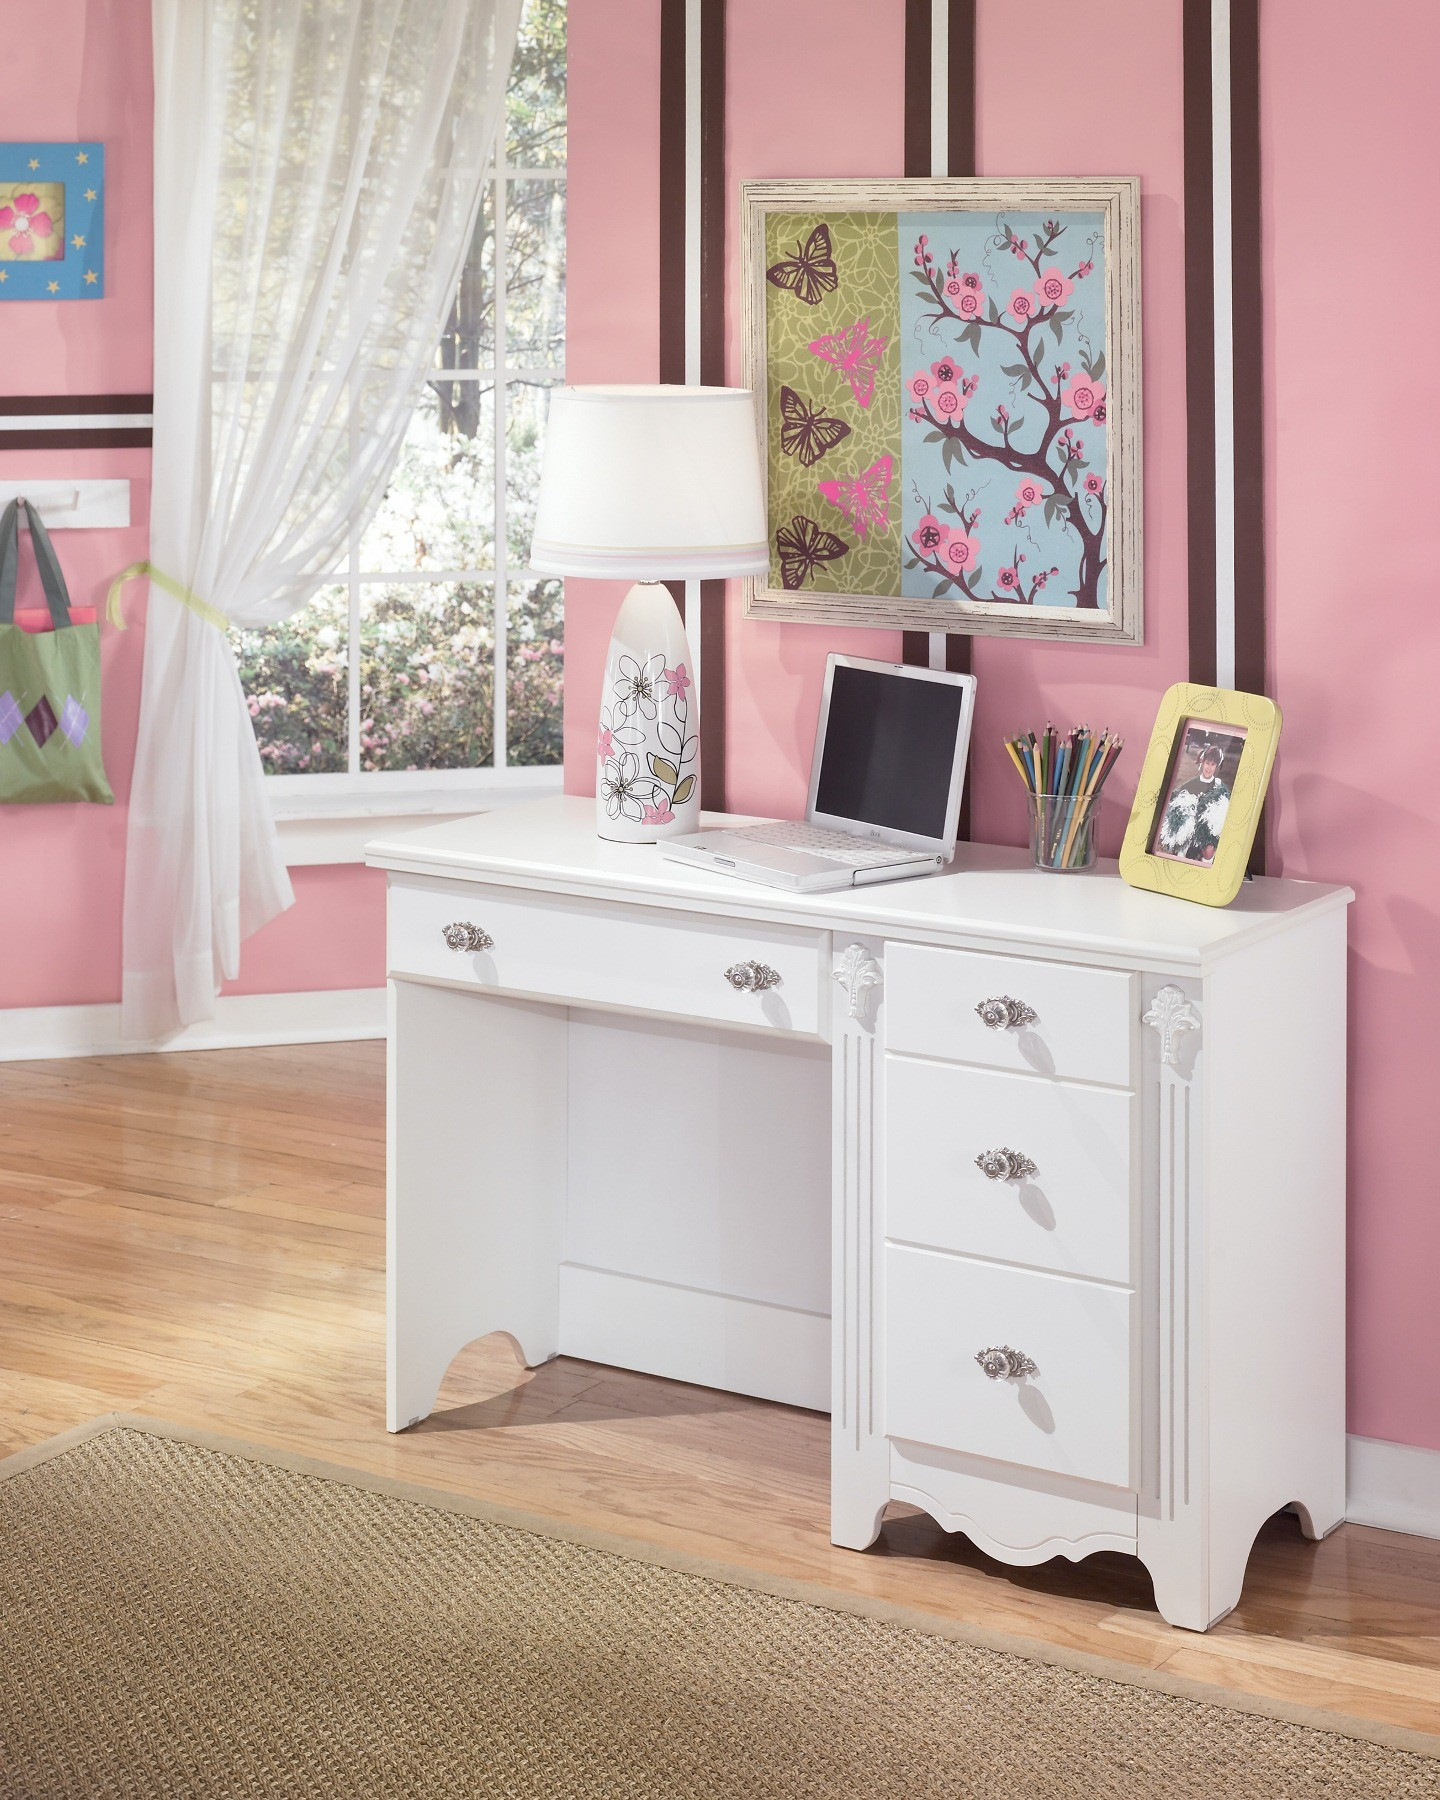 Girls Bedroom Desk
 Exquisite Bedroom Desk from Ashley B188 22